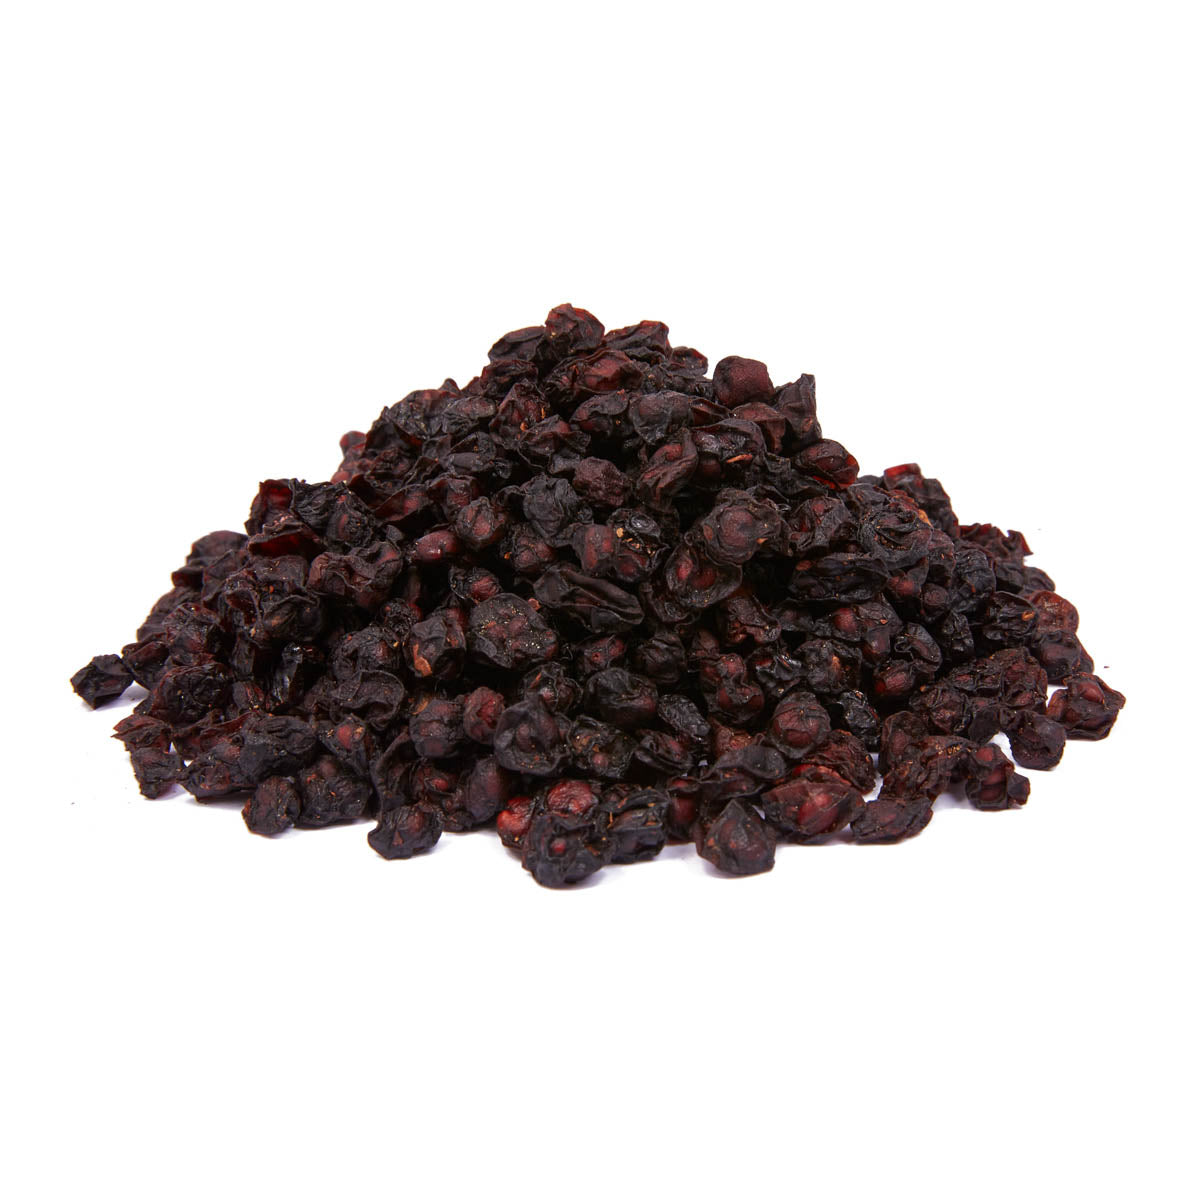 Dried Schizandra Berries (100g, 1kg)